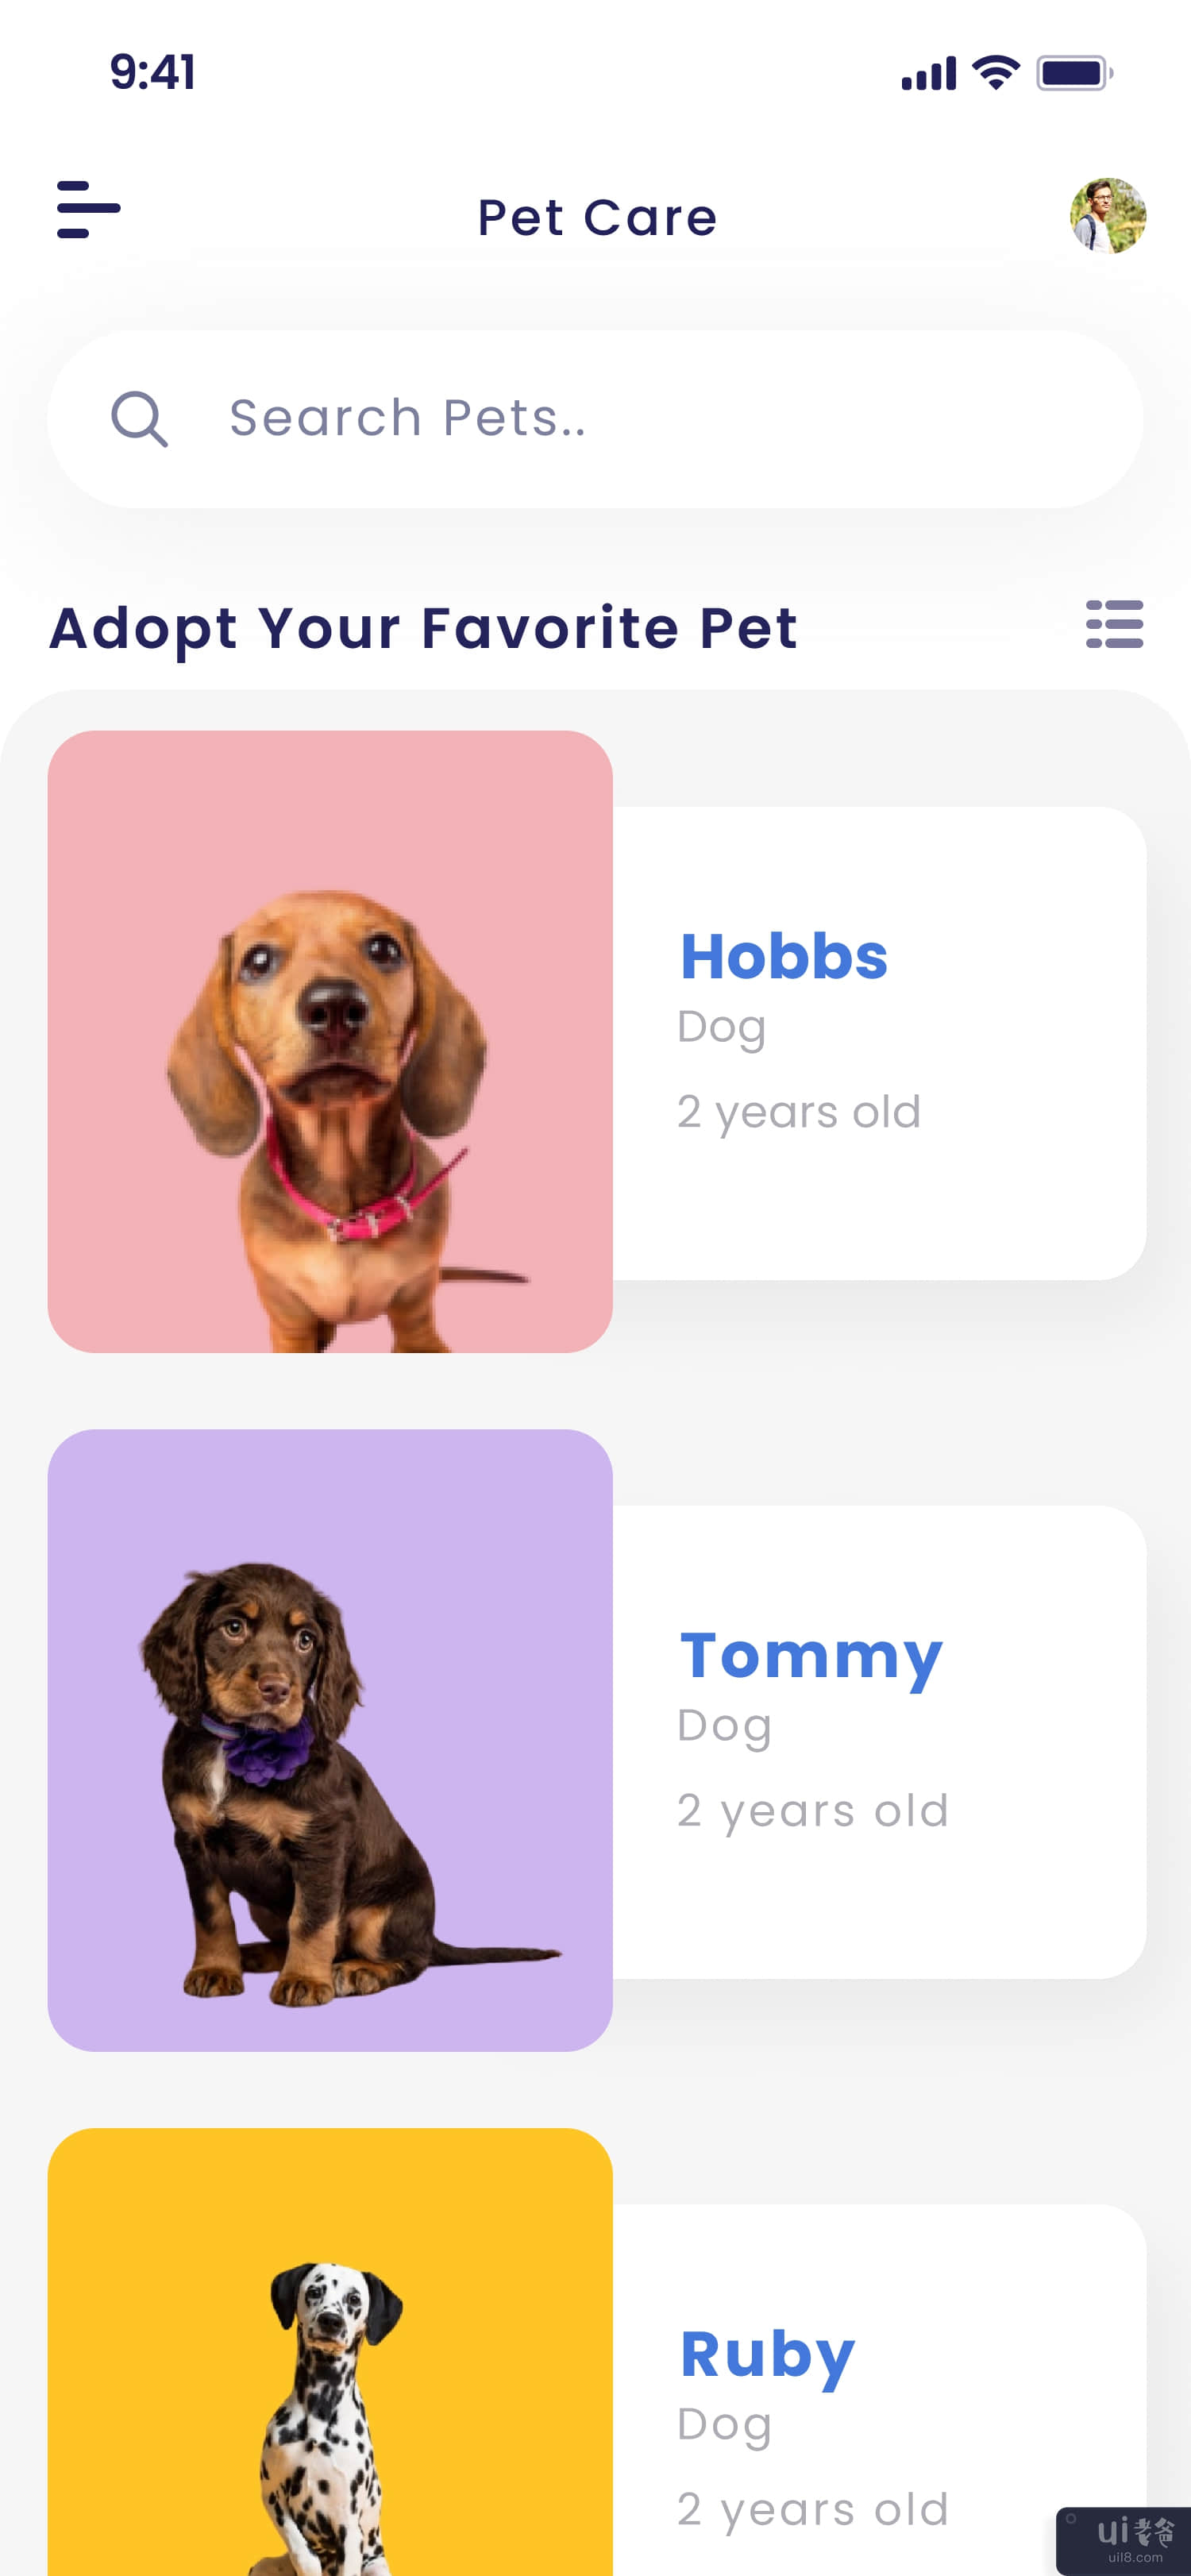 宠物护理应用程序 UI 套件(Pet Care App UI Kit)插图